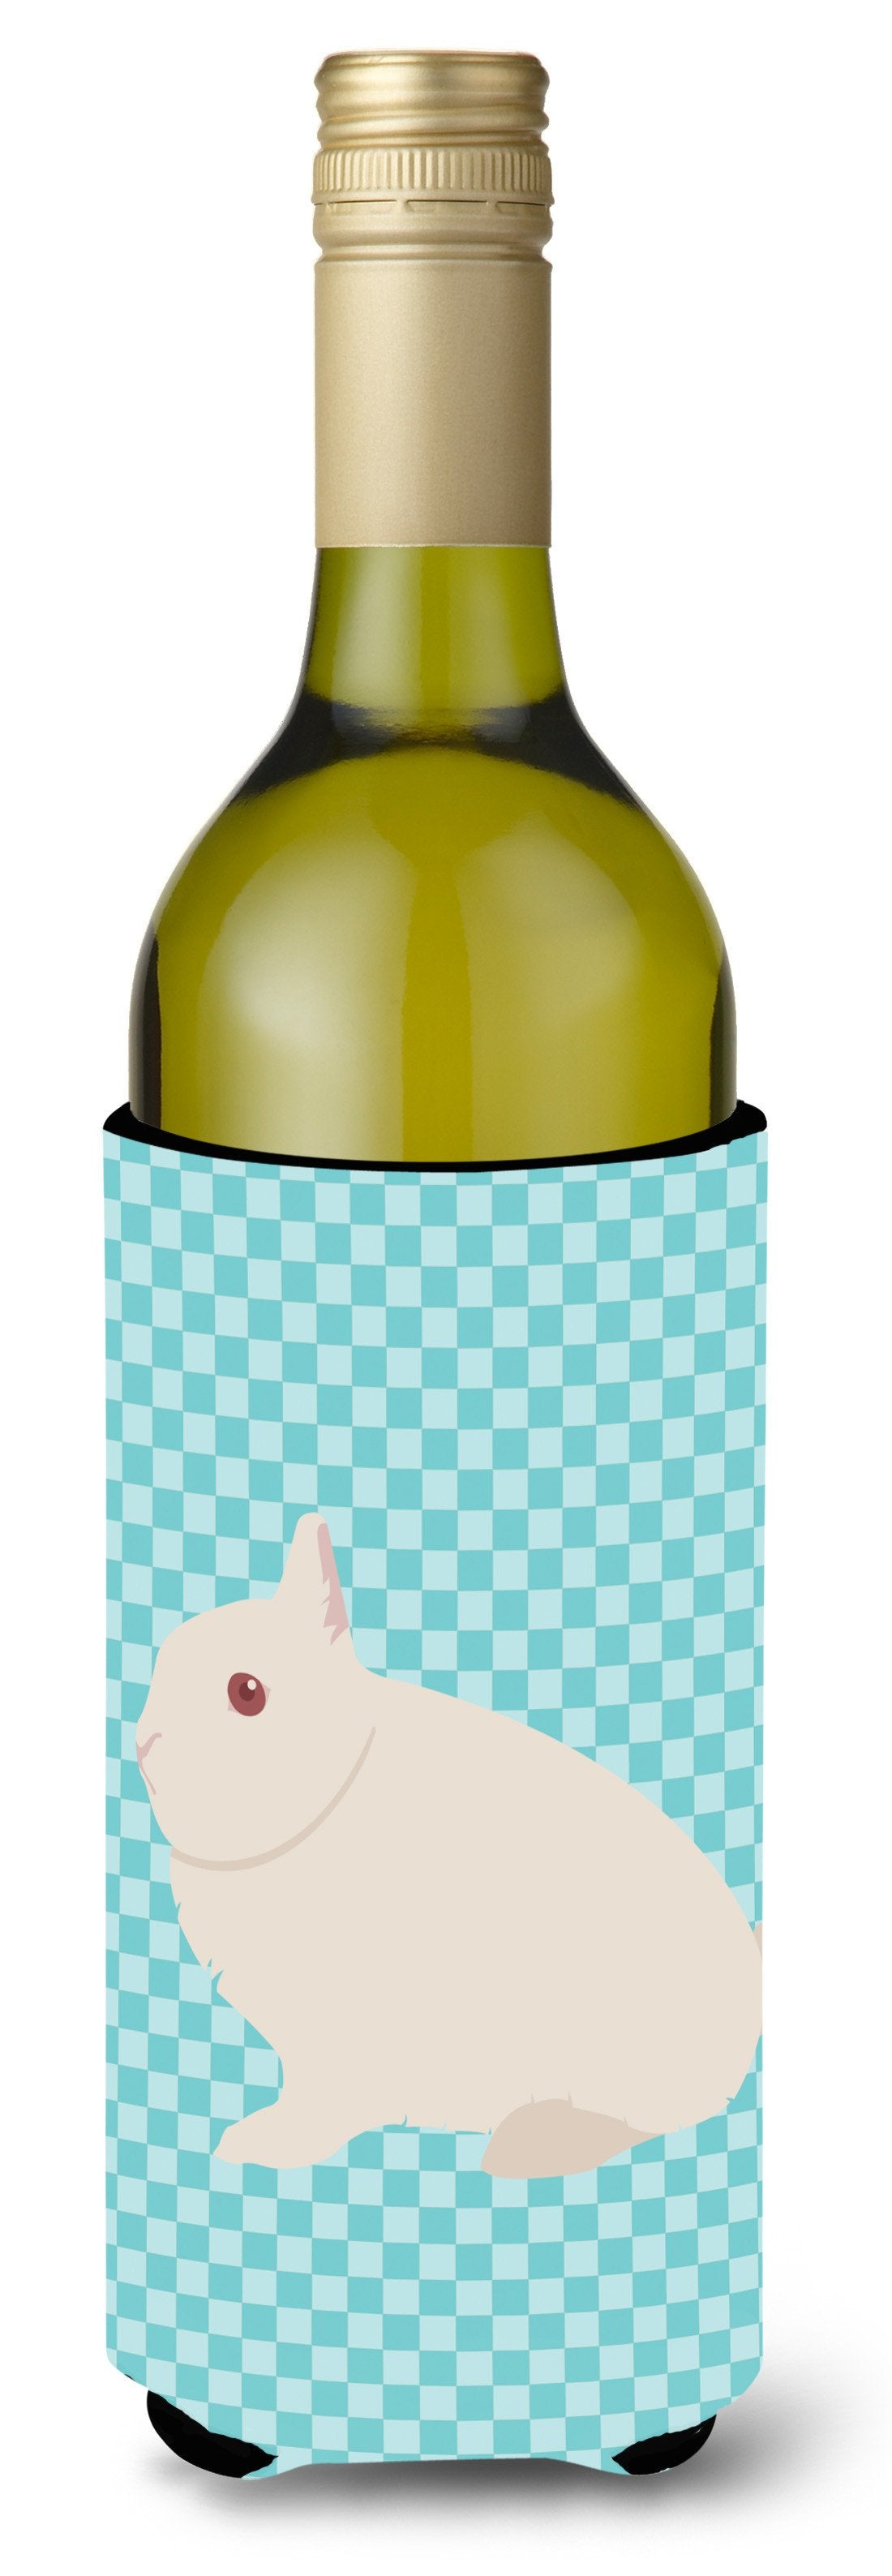 Hermelin Rabbit Blue Check Wine Bottle Beverge Insulator Hugger BB8138LITERK by Caroline's Treasures